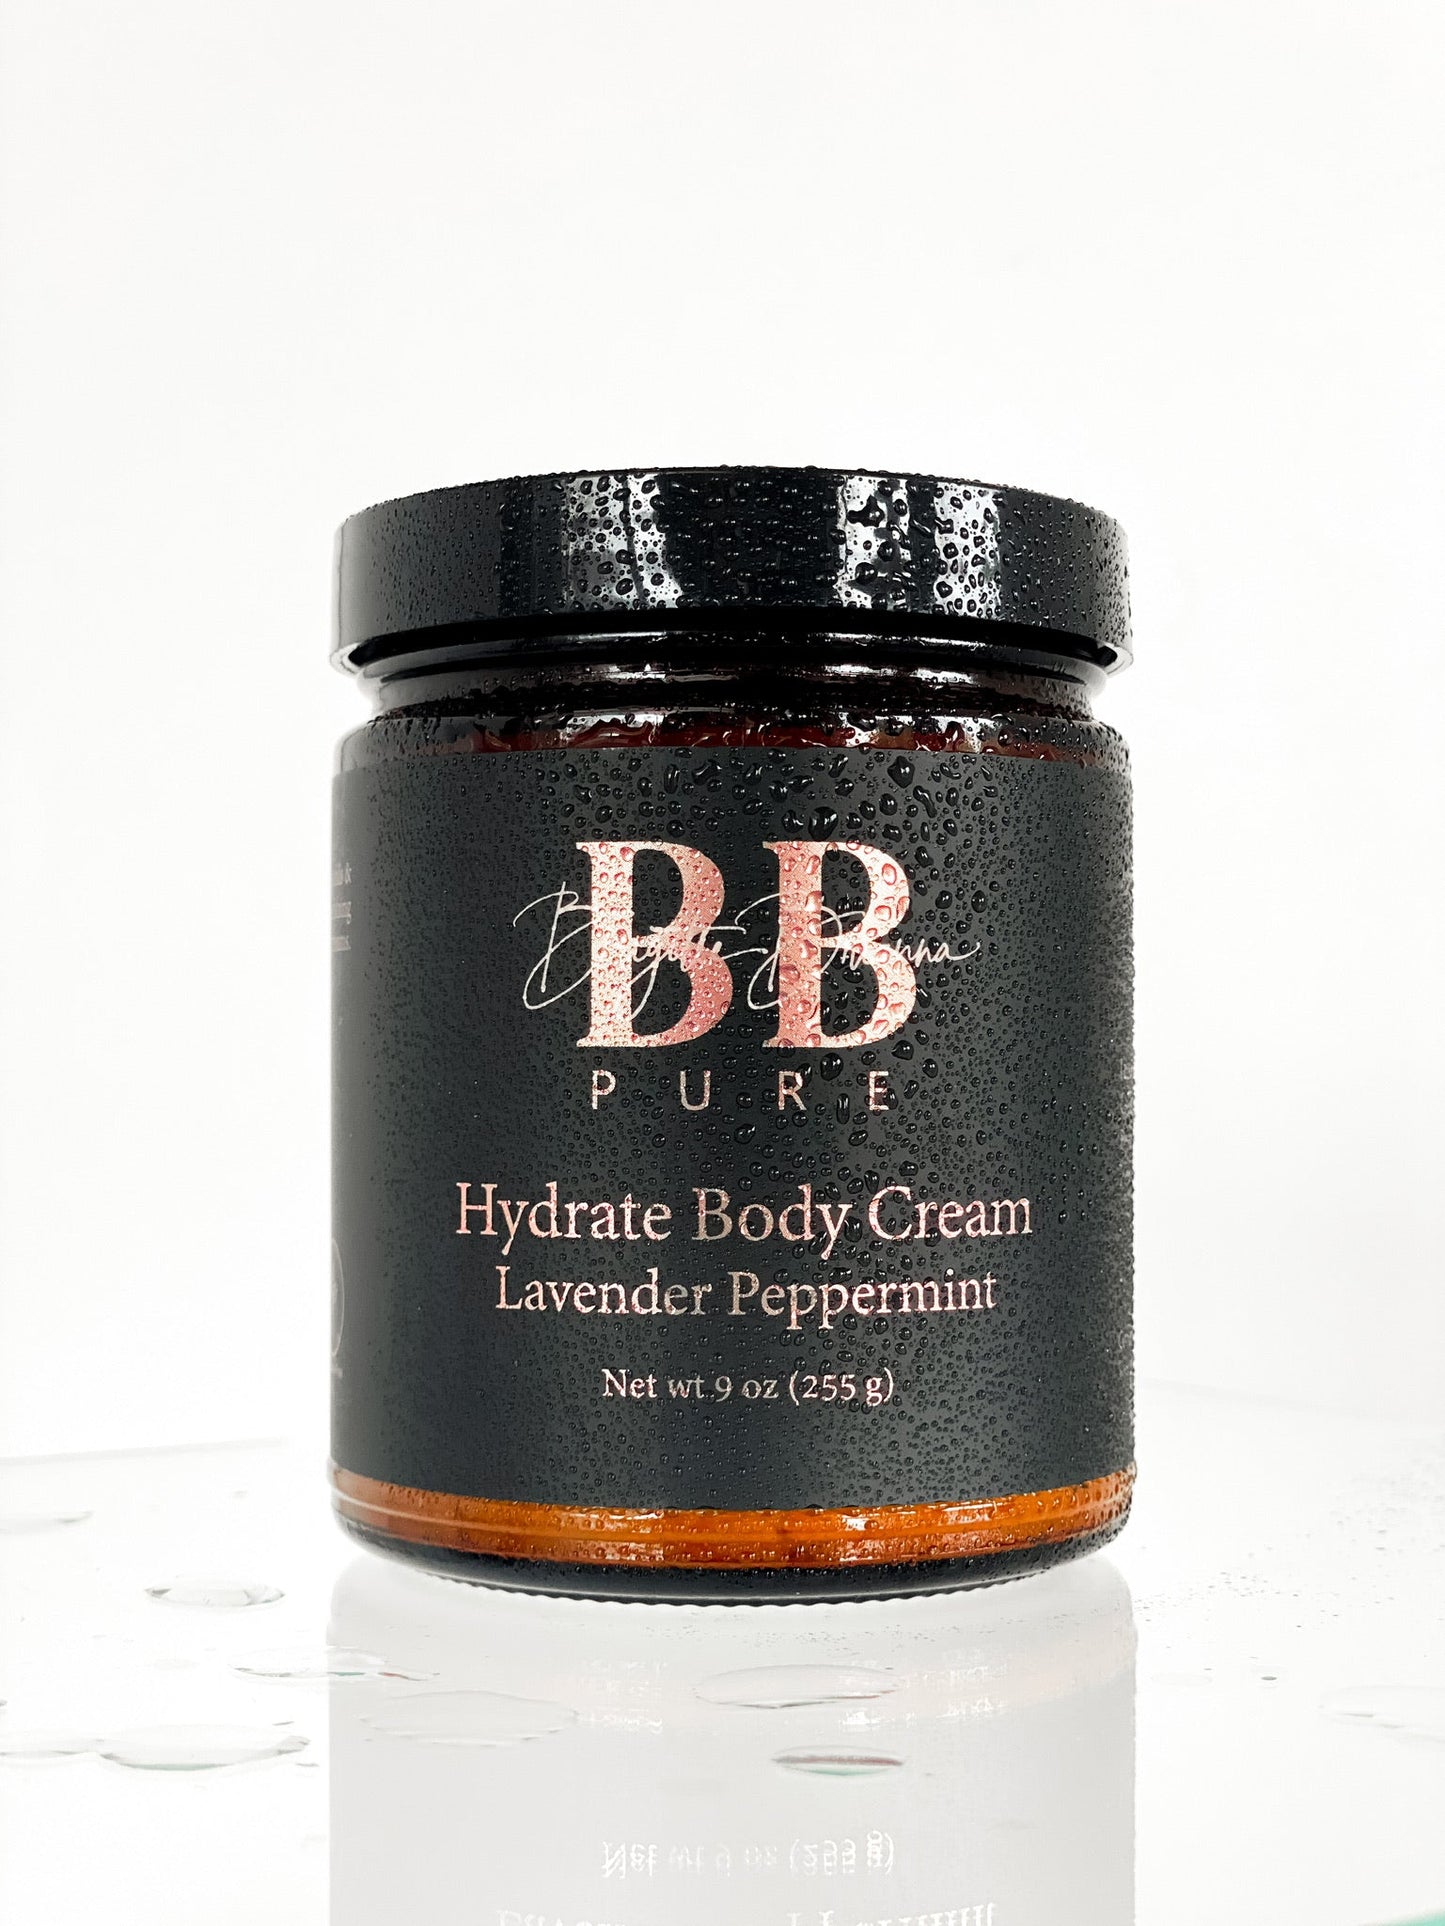 BB Pure Hydrate Body Cream